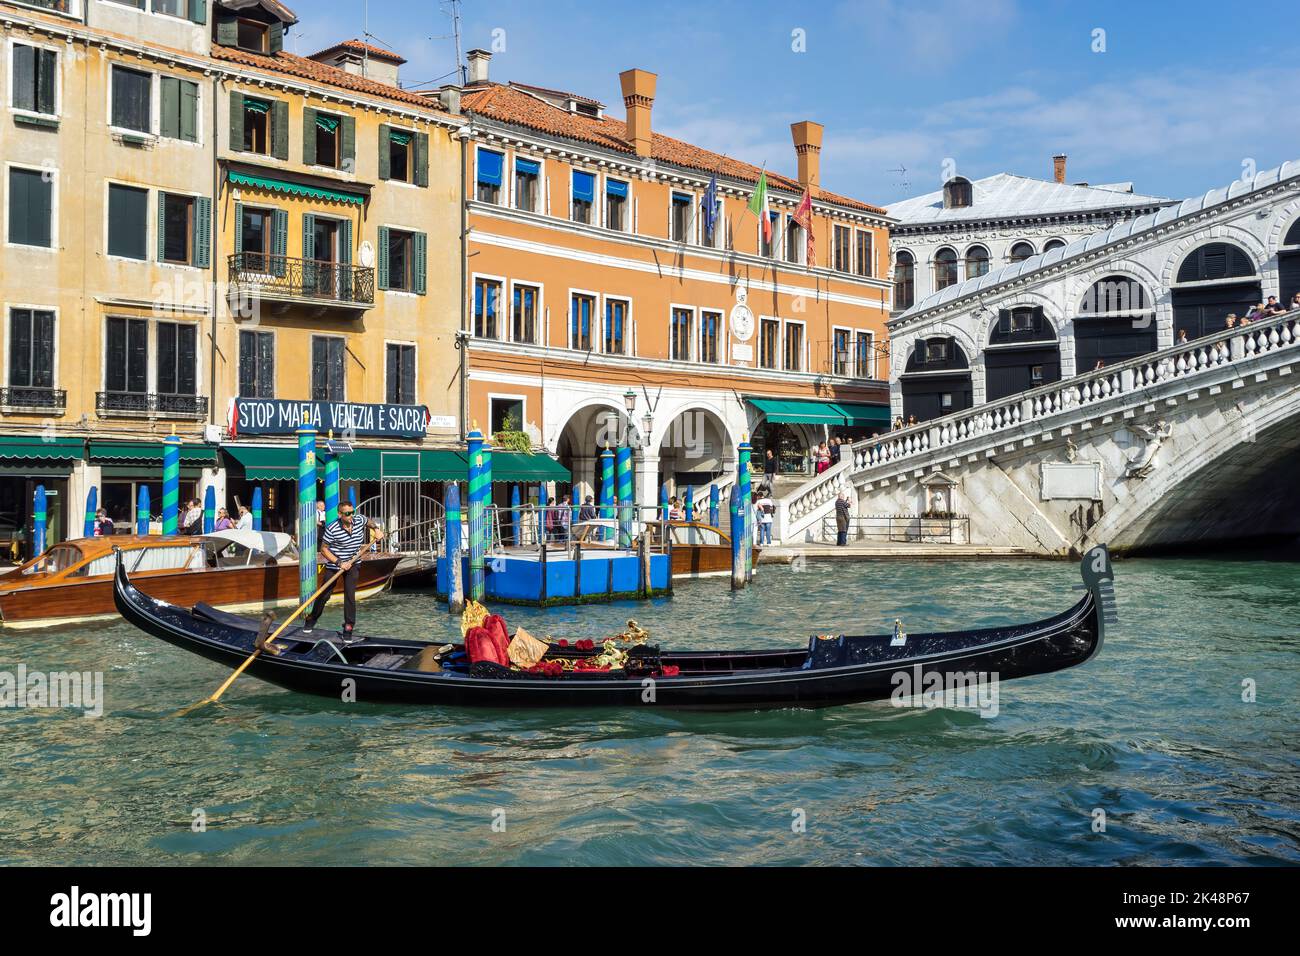 VENEZIA, ITALIA - 12 OTTOBRE : gondoliere in azione a Venezia il 12 ottobre 2014. Persone non identificate. Foto Stock